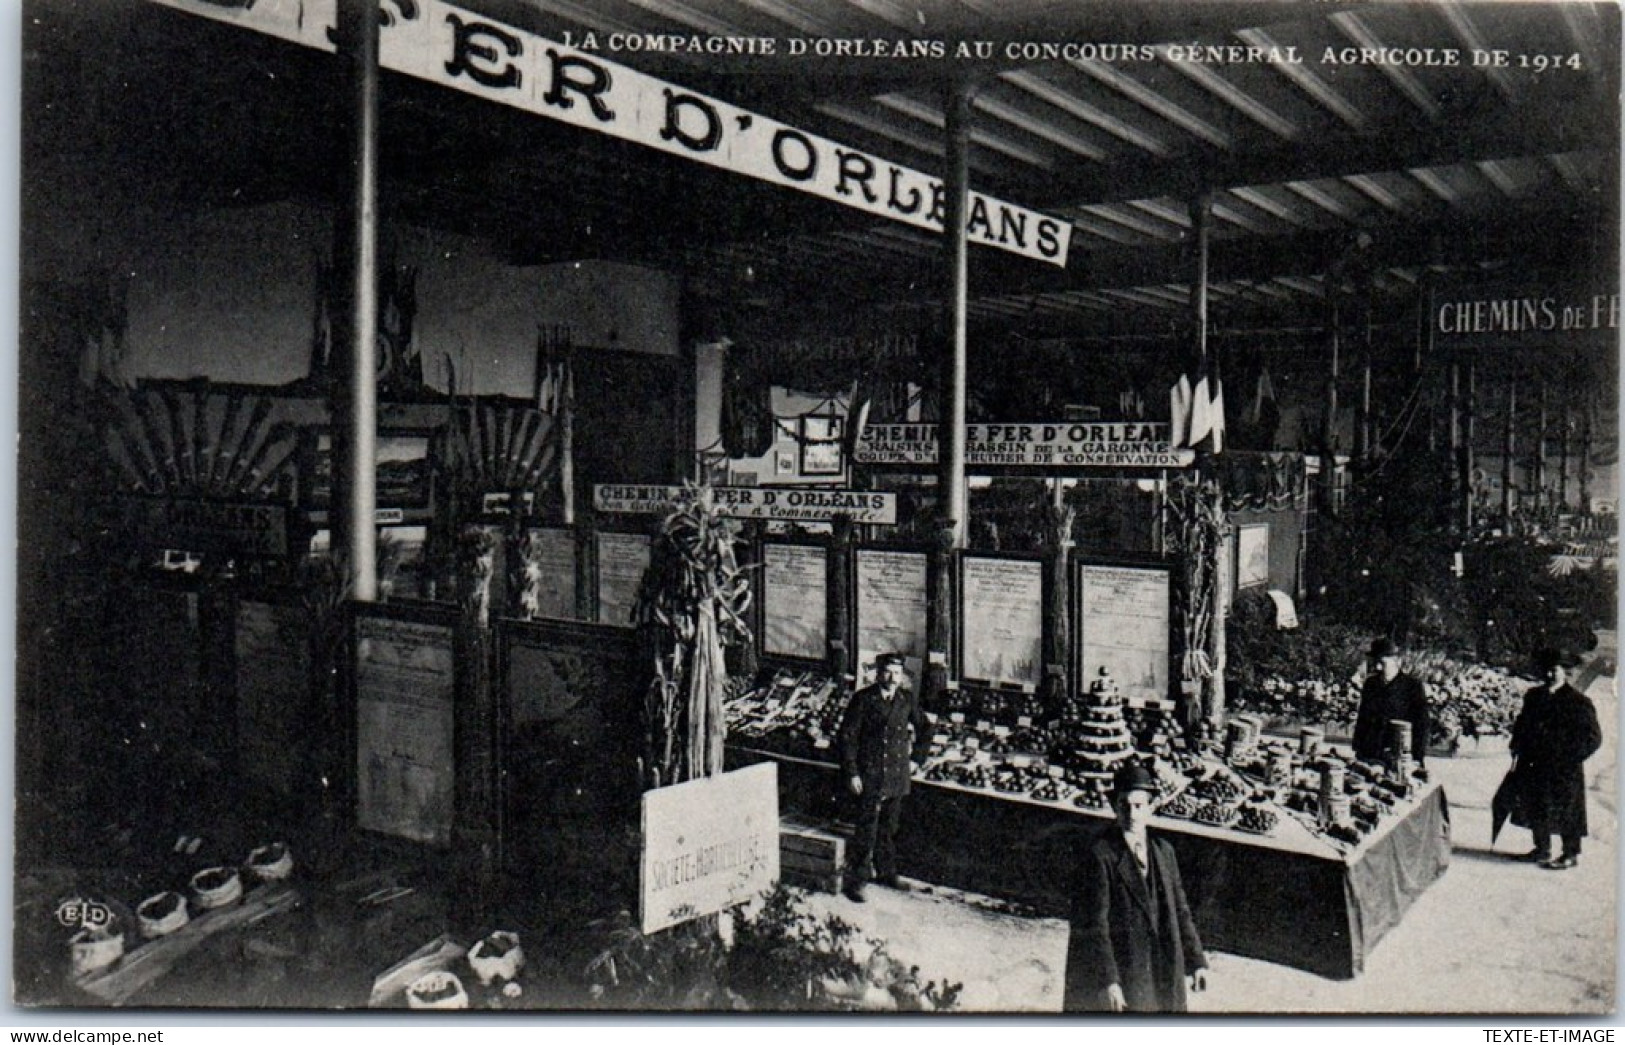 75 PARIS - Expo Agricole De 1914, Cie D'orleans Les Stands  - Mostre